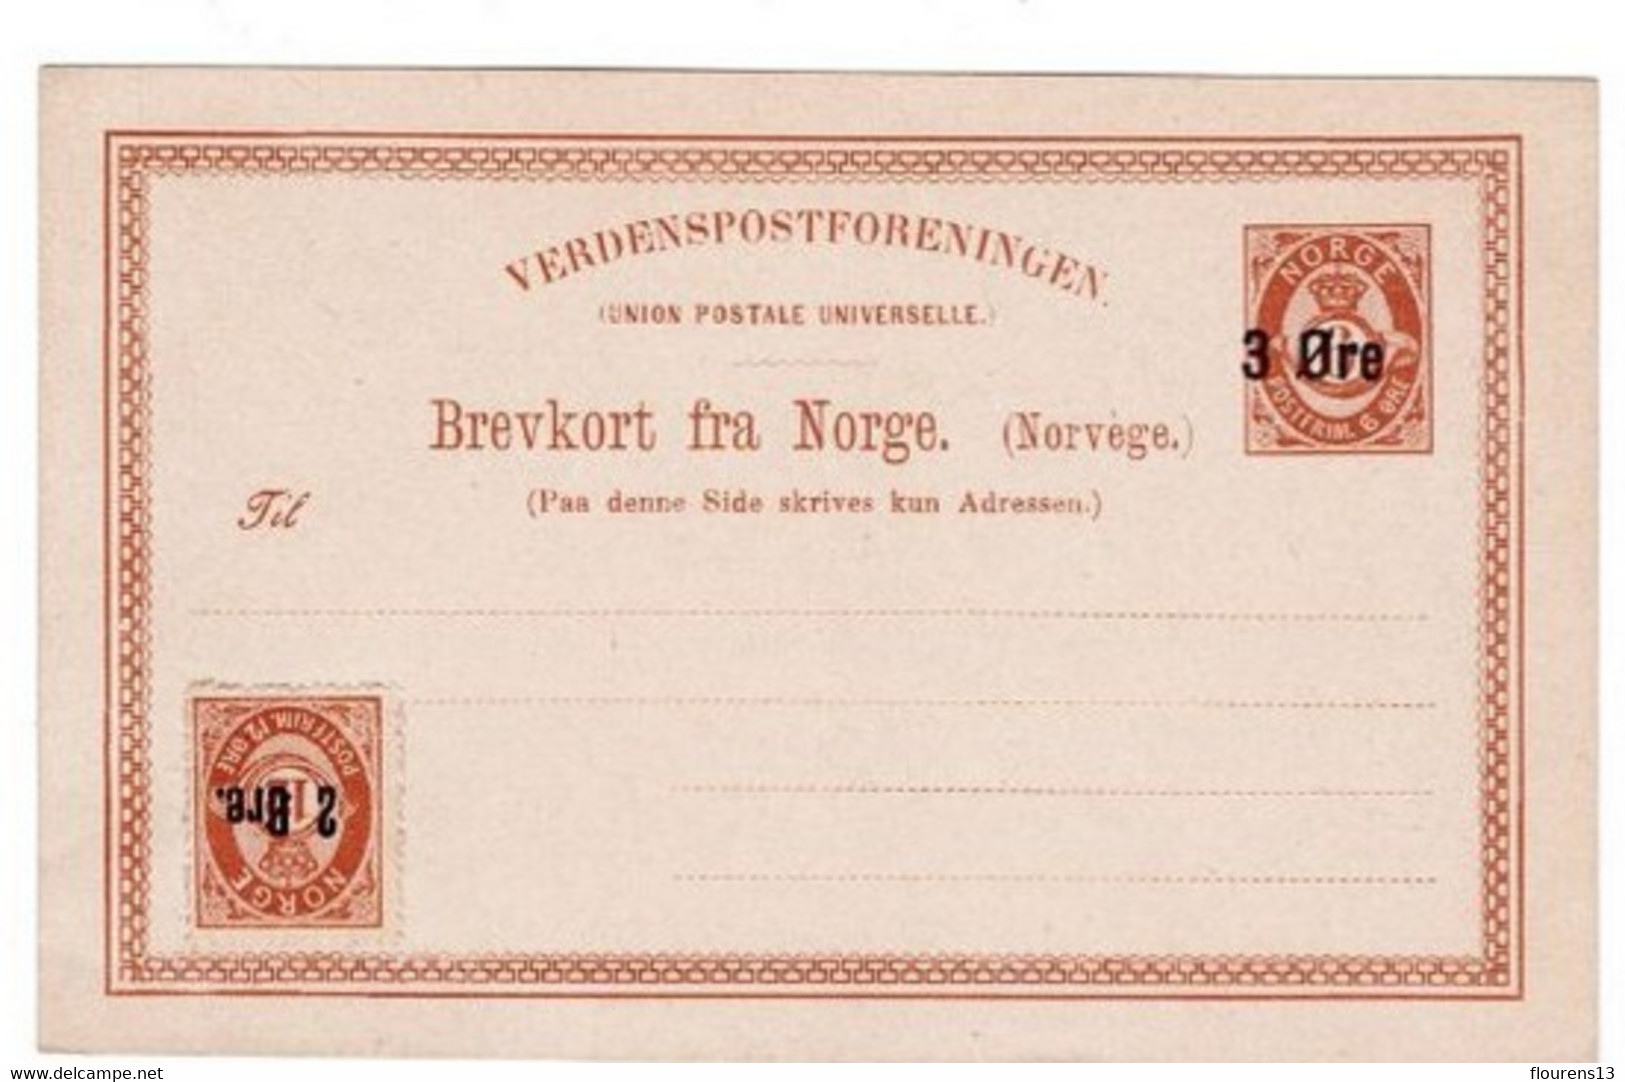 Norvège > Entiers Postaux:1888 Carte Postale De Norvège 3 øre Sur 6 øre + COMPLEMENT 6 / 12 ORE NEUVE TBE ENTIER POSTAL - Enteros Postales